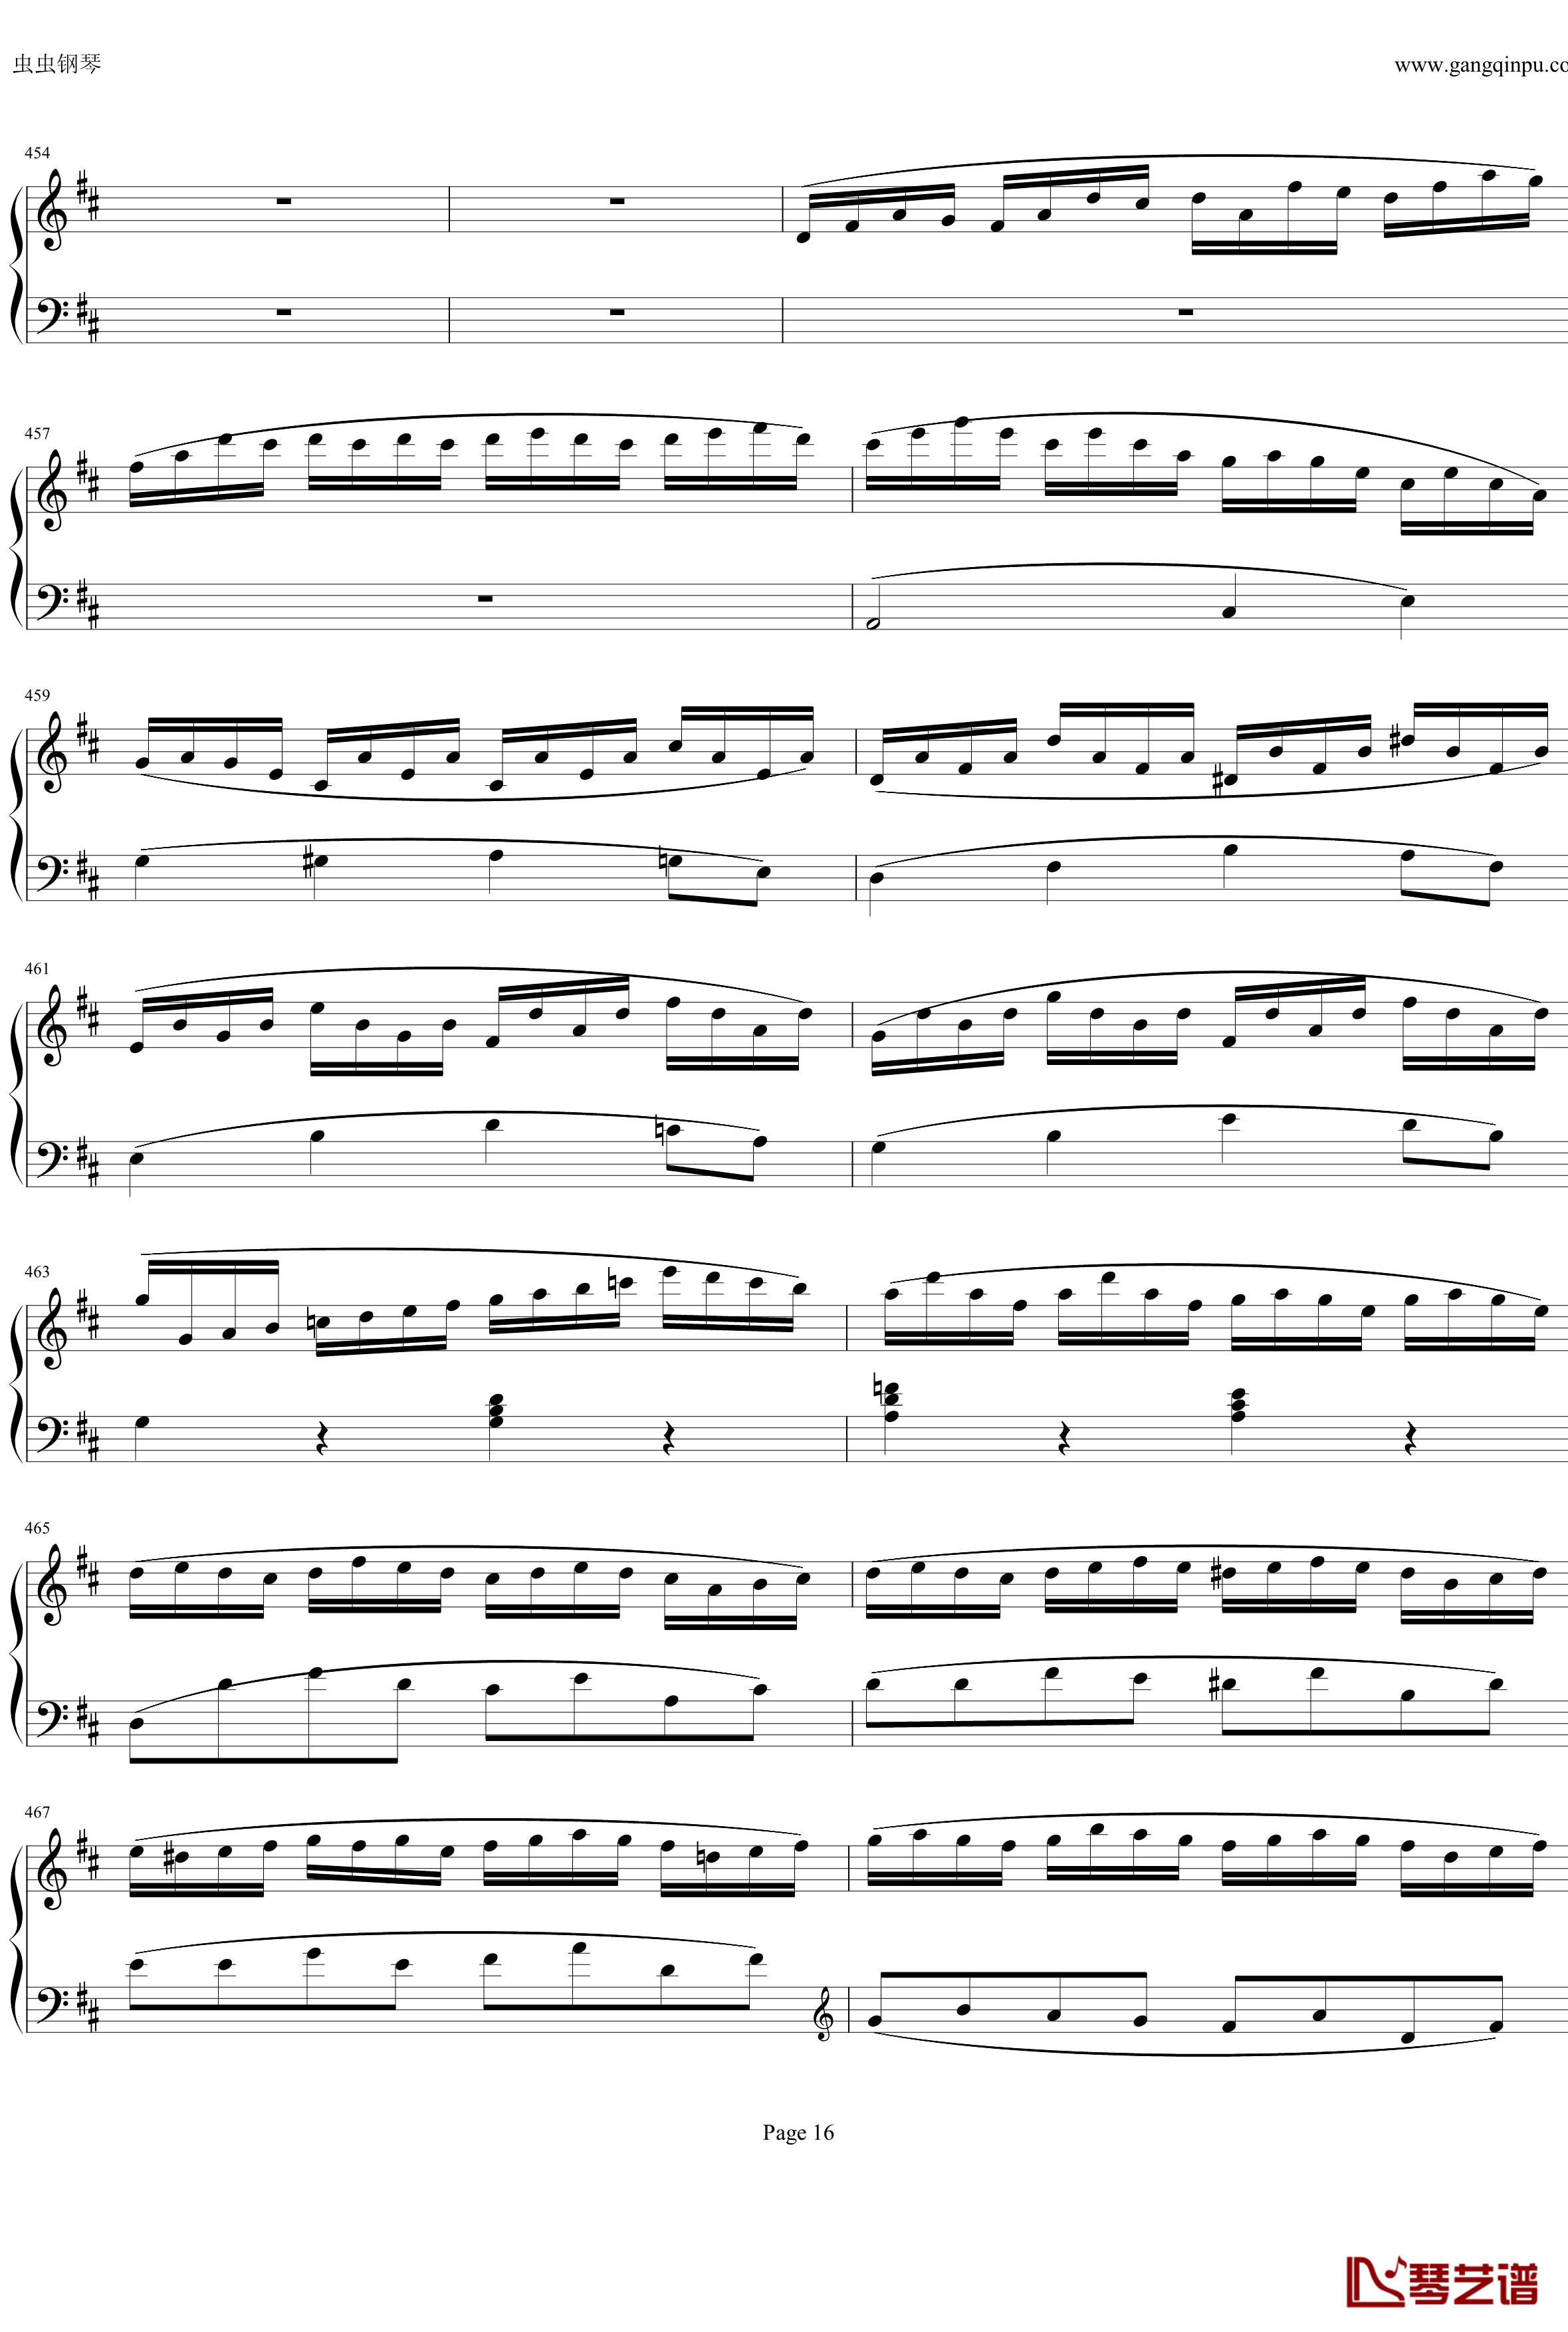 钢琴协奏曲Op61第一乐章钢琴谱-贝多芬-beethoven16